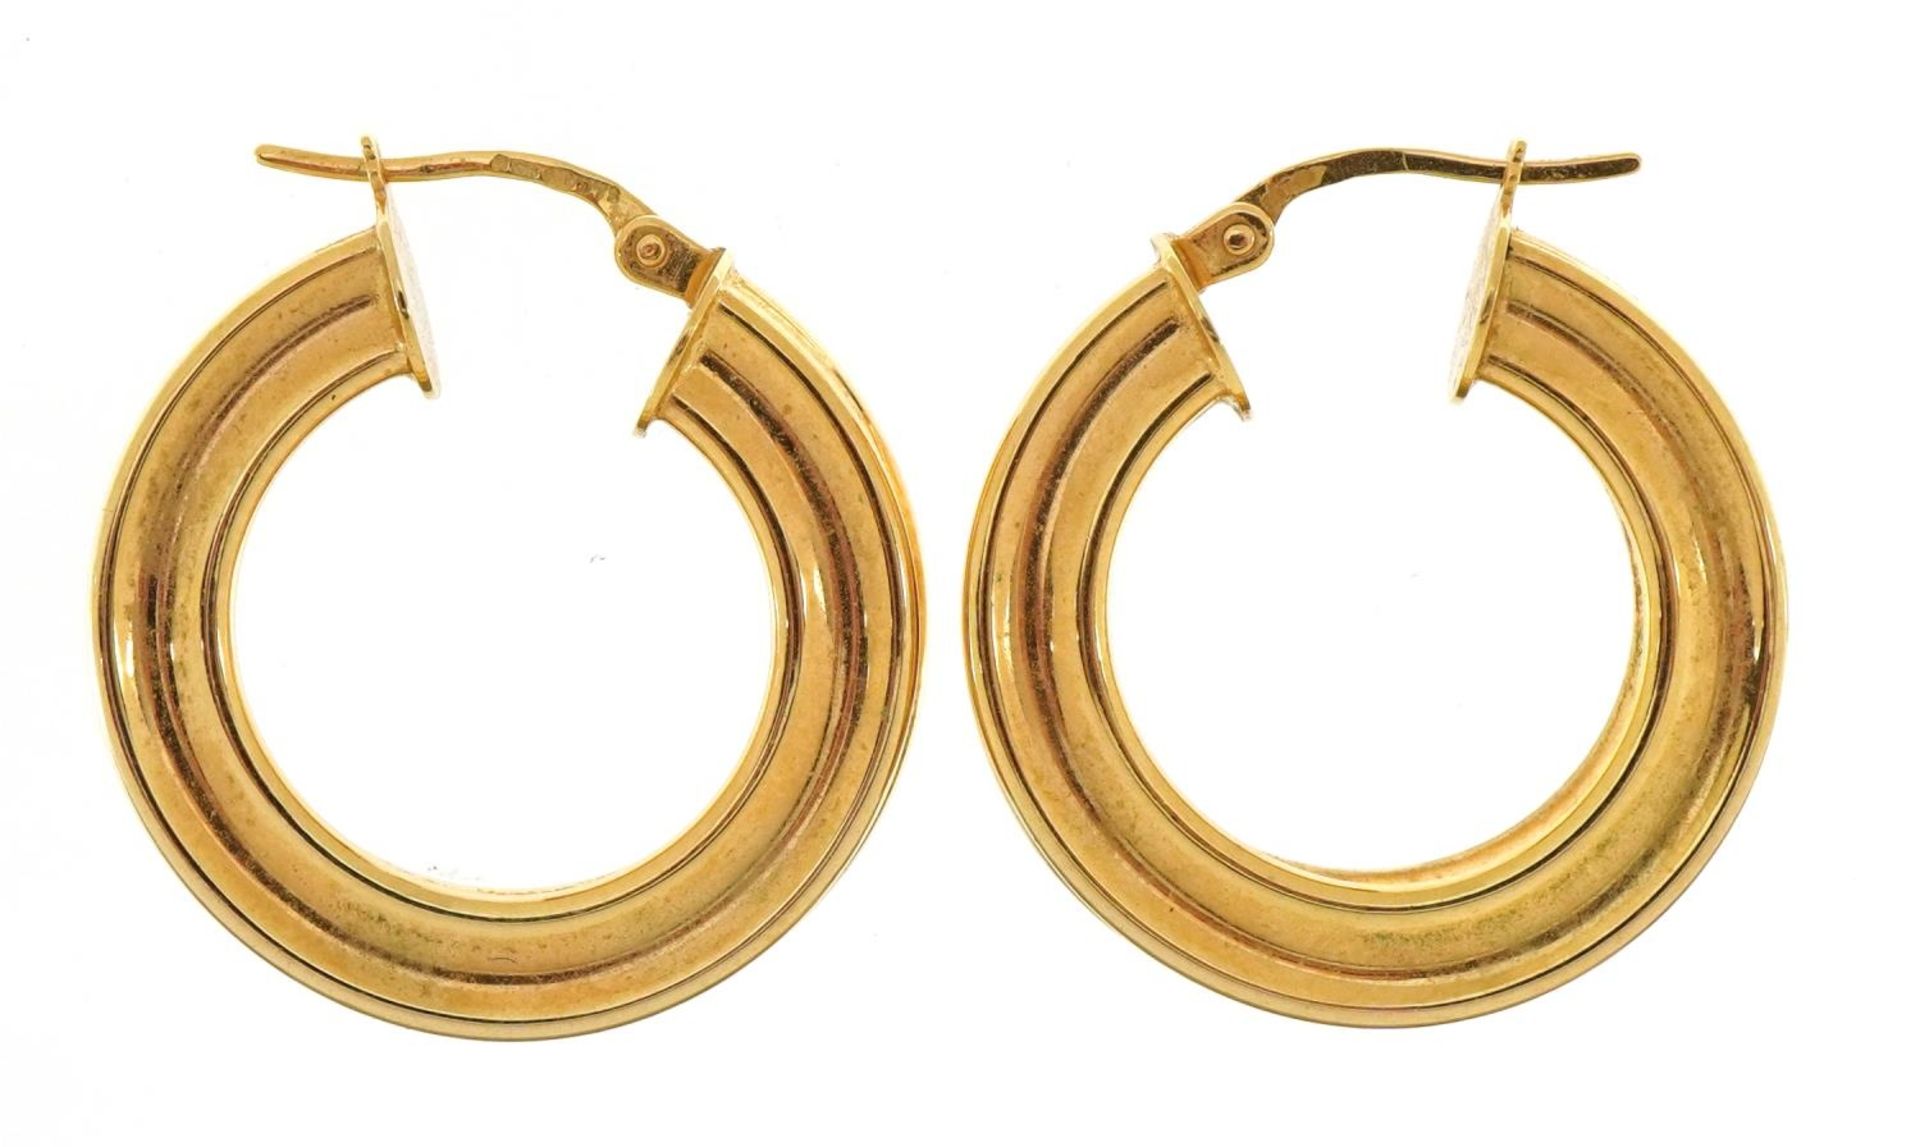 Pair of 9ct gold hoop earrings, 2.4cm in diameter, 3.8g